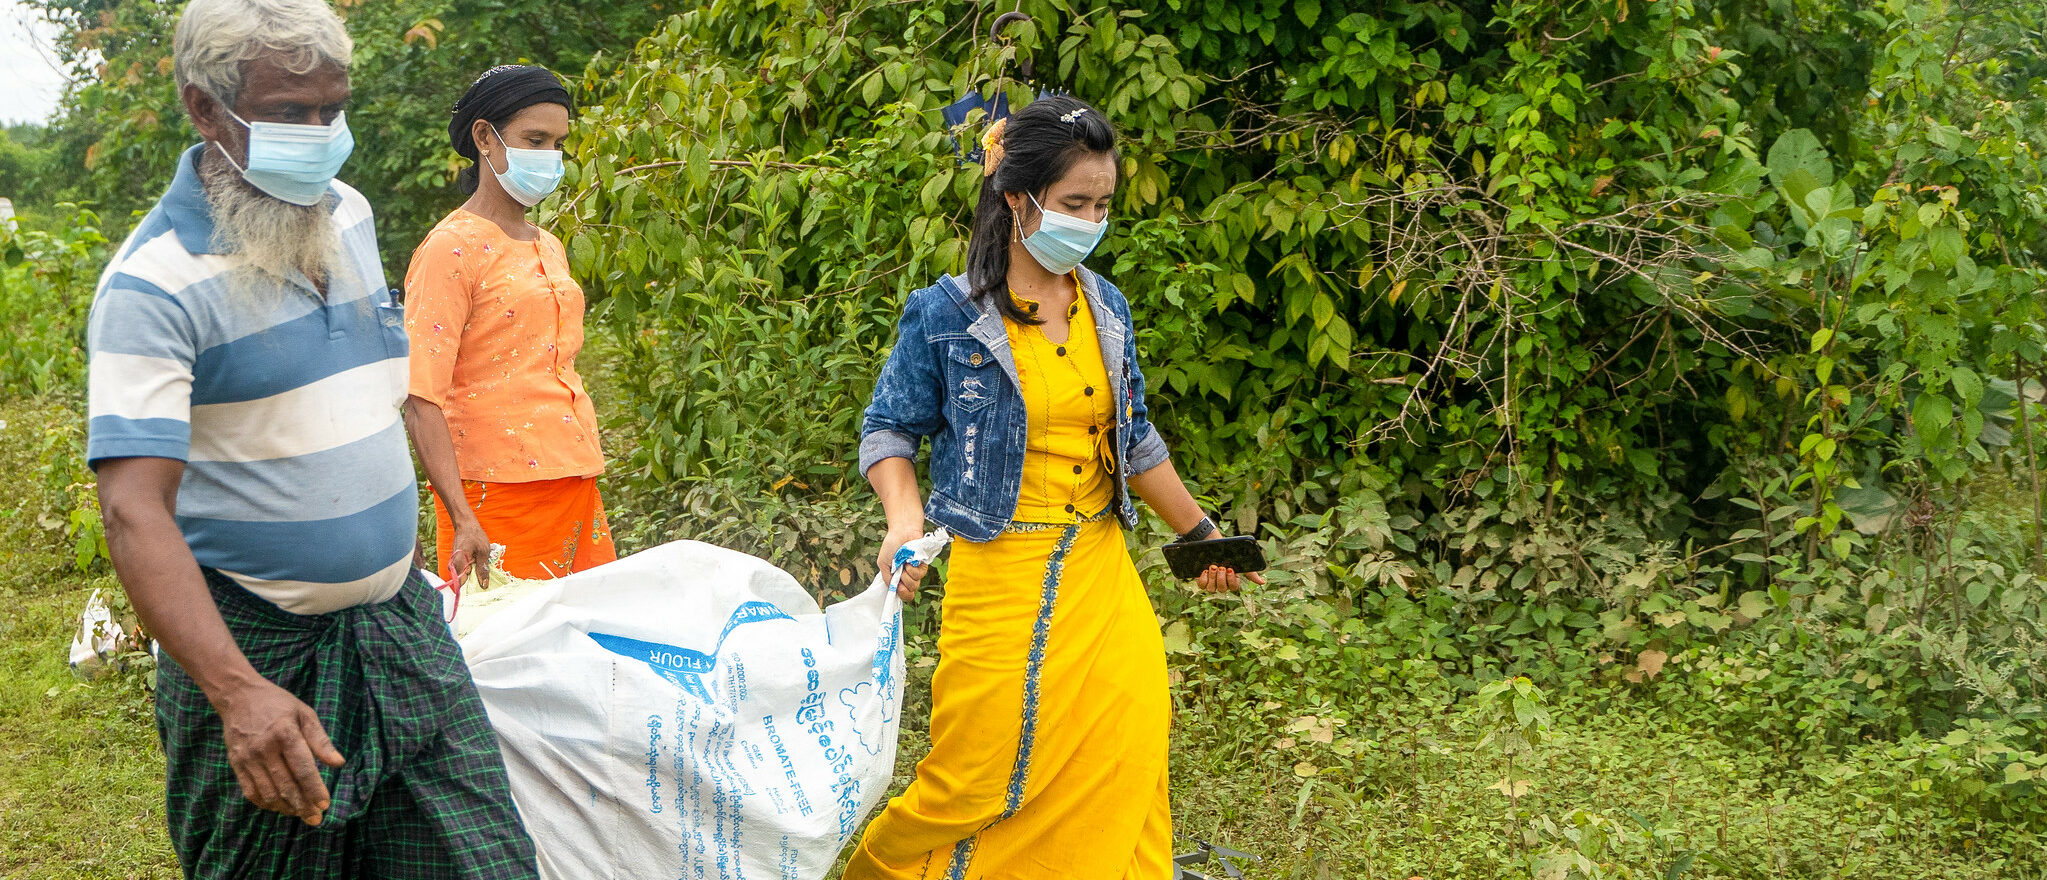 La pandémie de Covid-19 s'aggrave en Birmanie | photo d'illustration © usaidinmyanmar/Flickr/CC BY-NC 2.0